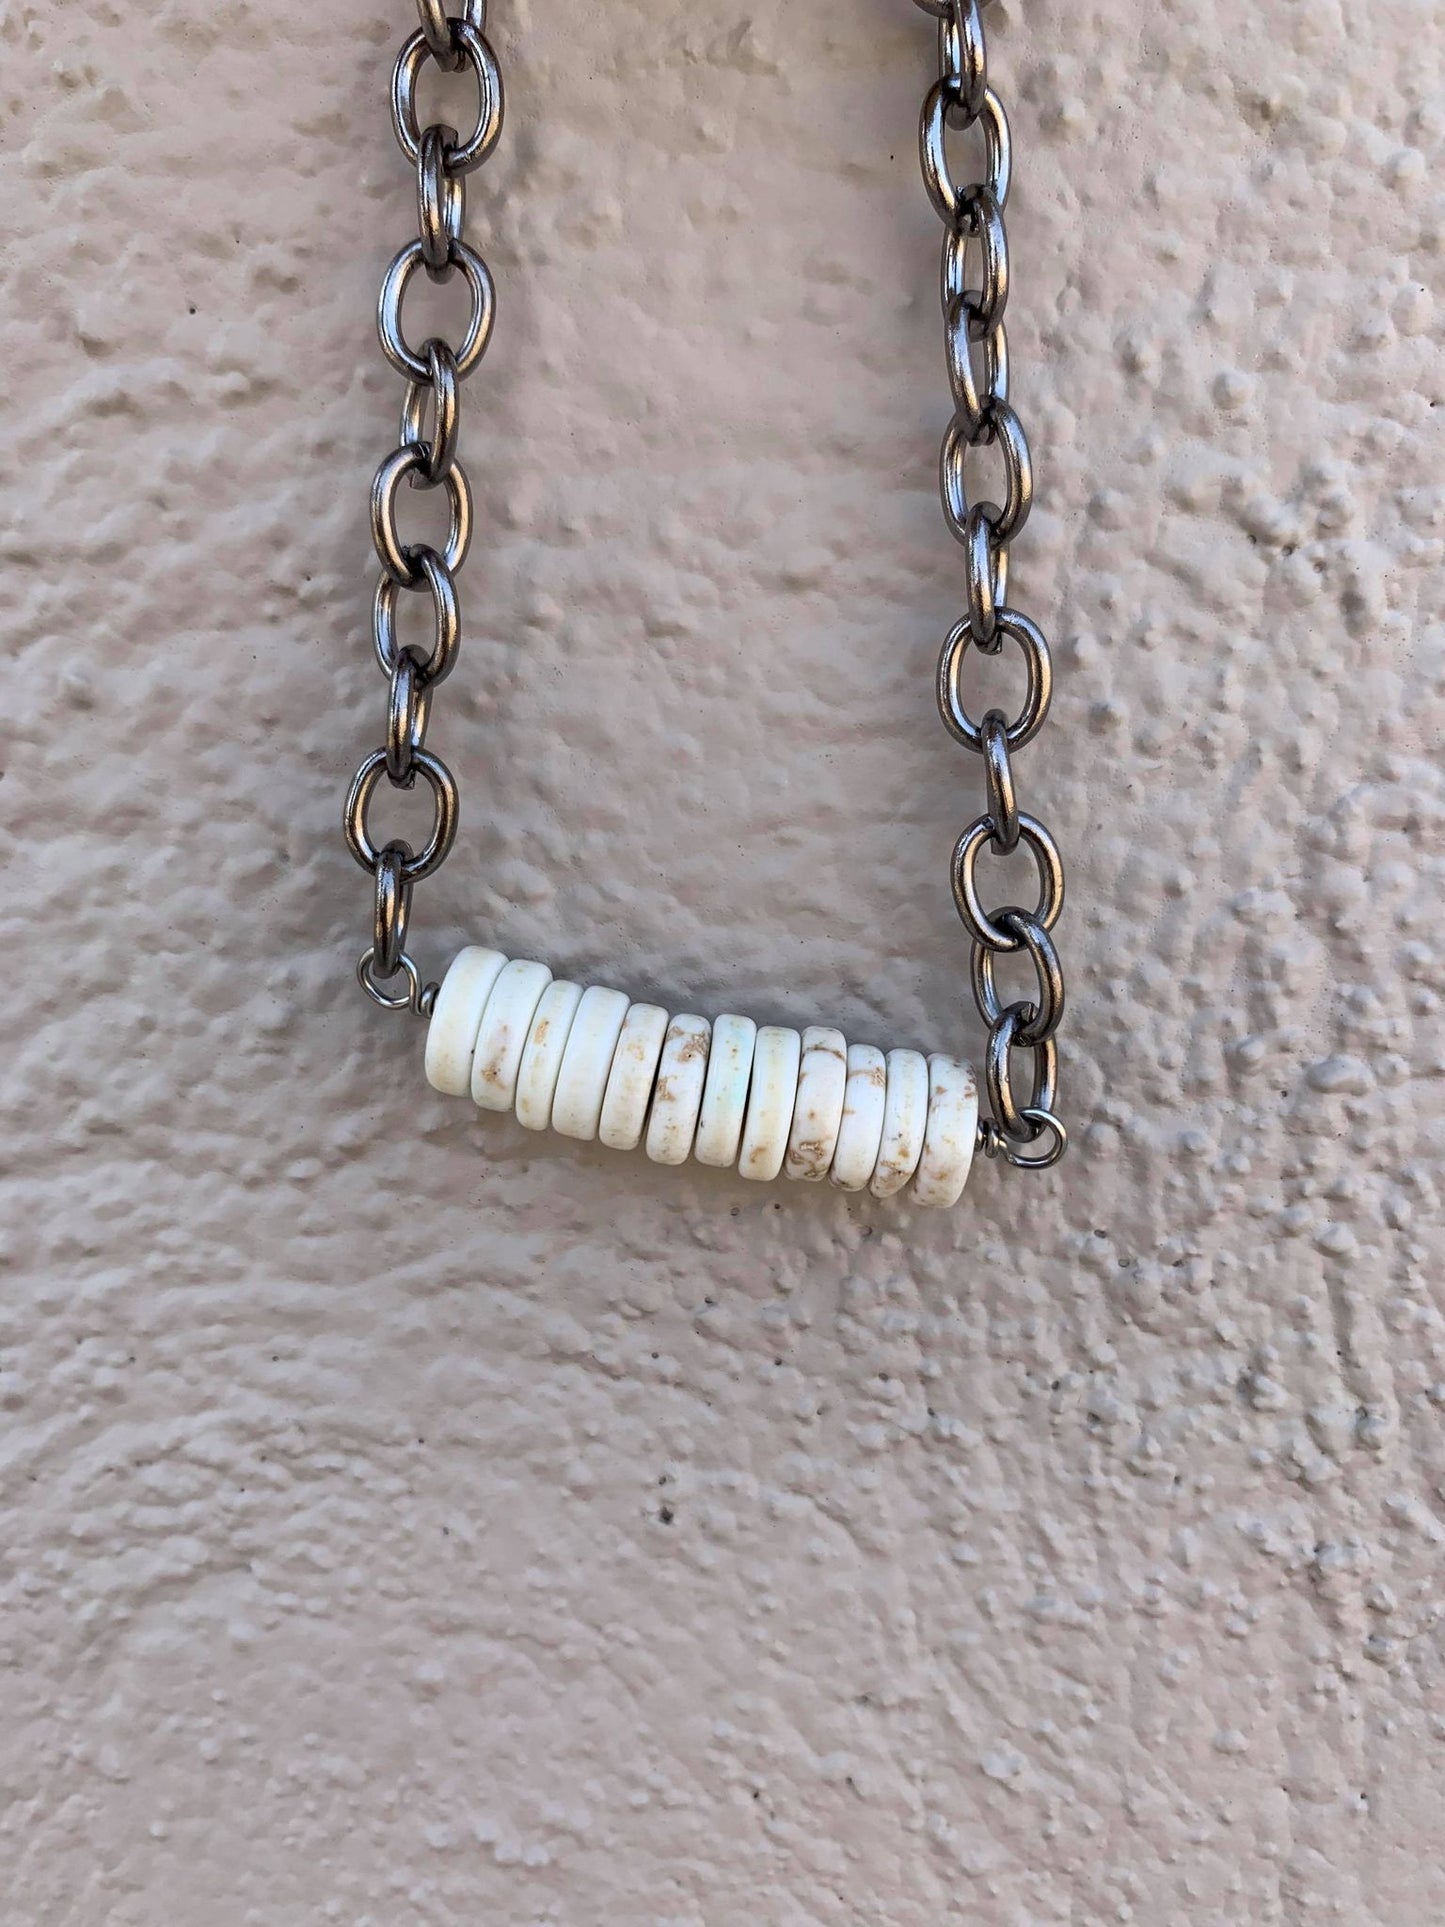 White Bone Round Bar Stone Chain Necklace